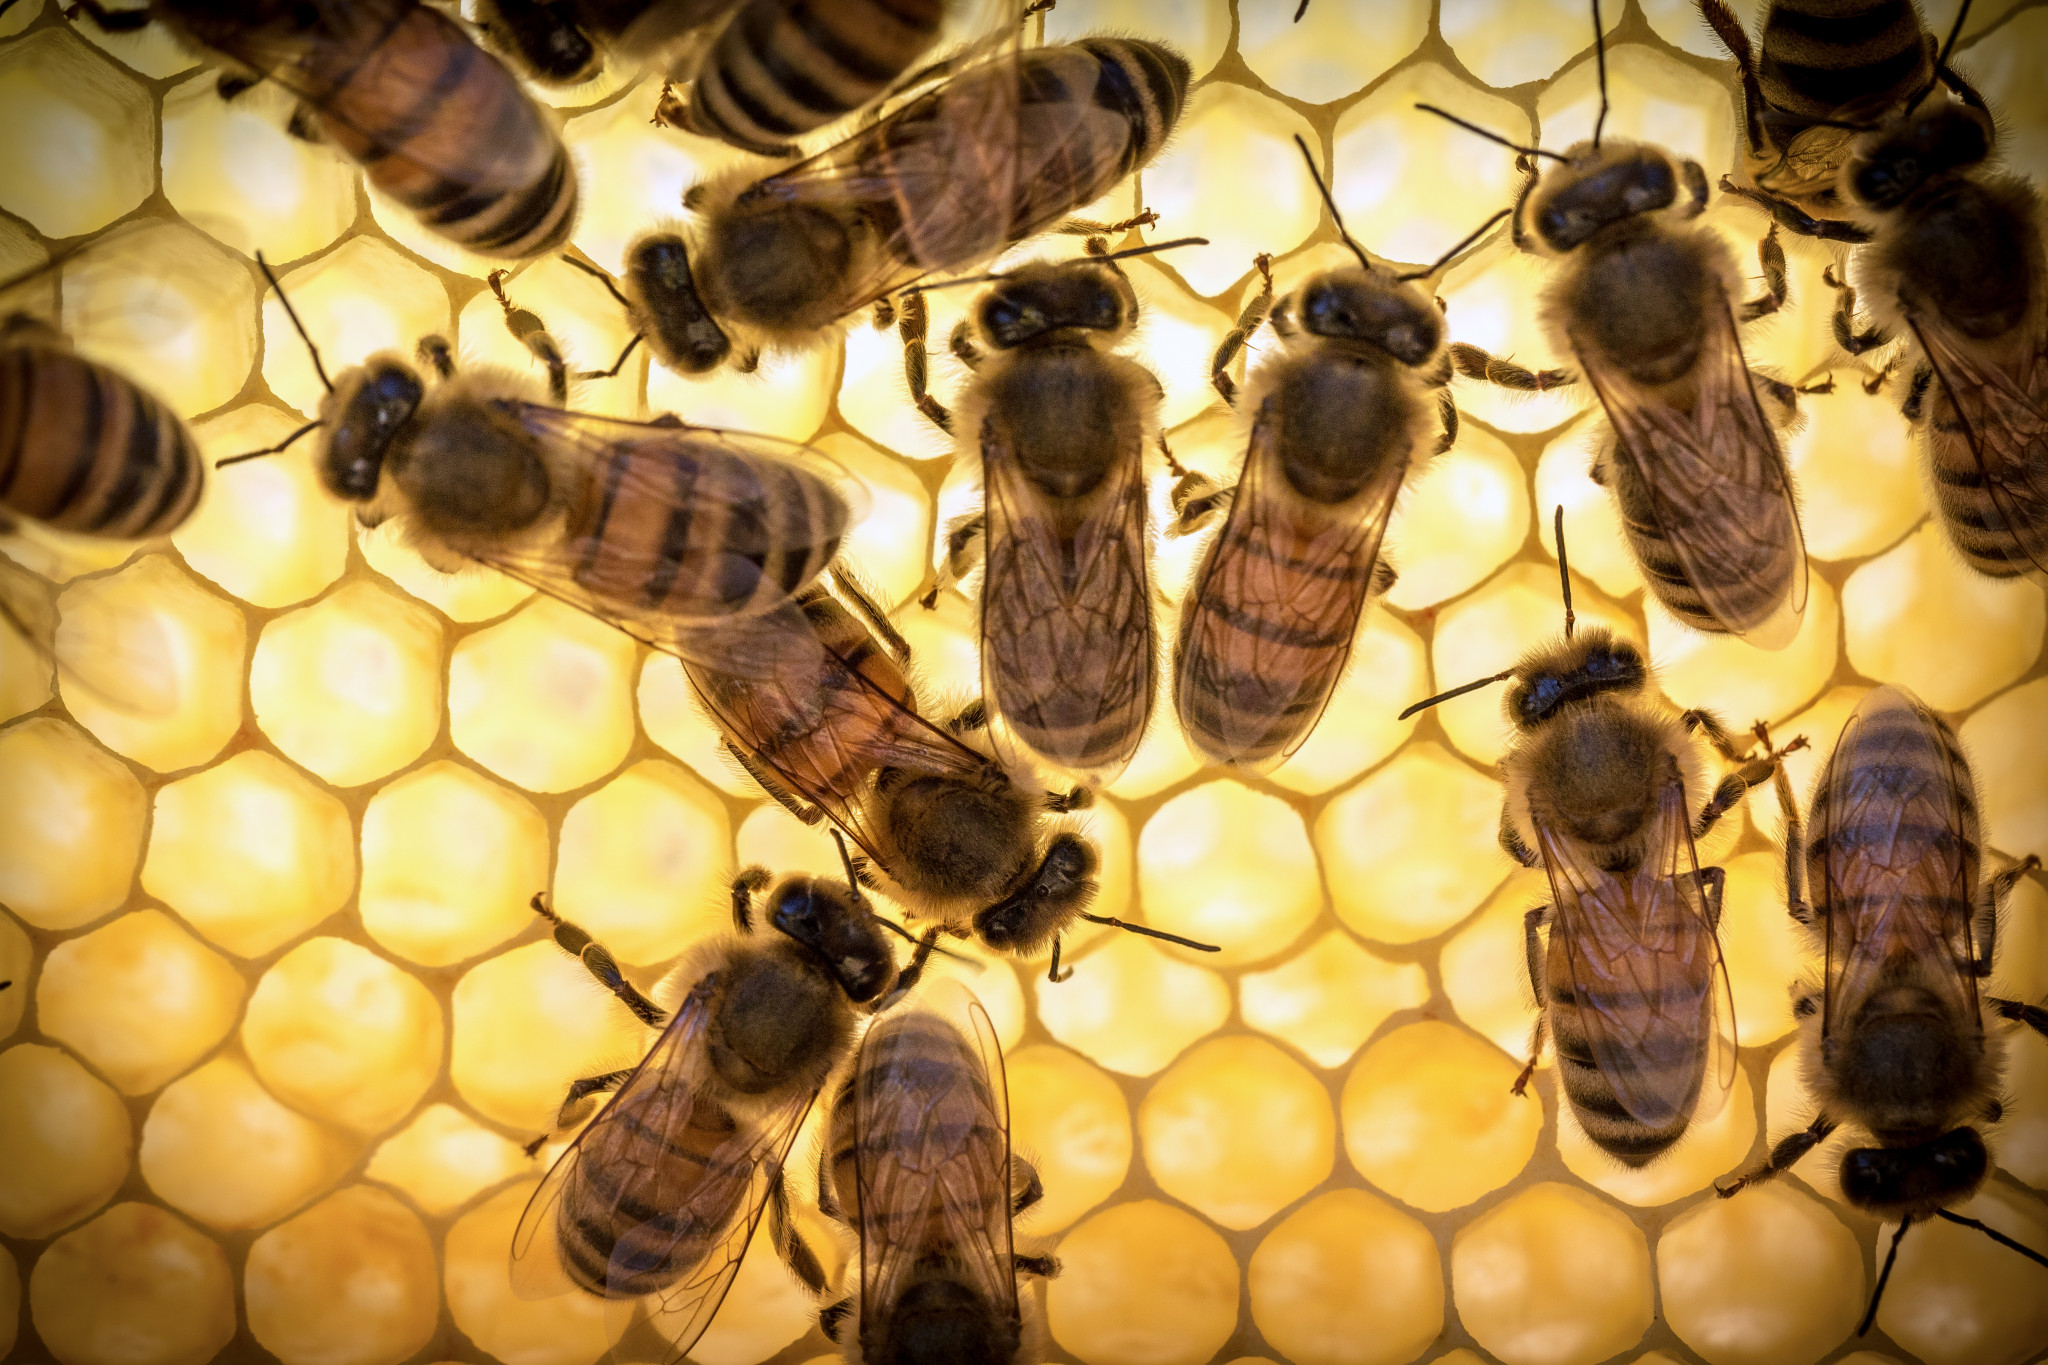 Bee royal jelly wordt niet aanbevolen om 's nachts te gebruiken, omdat onder invloed hiervan de zenuwactiviteit en mogelijk slapeloosheid toeneemt